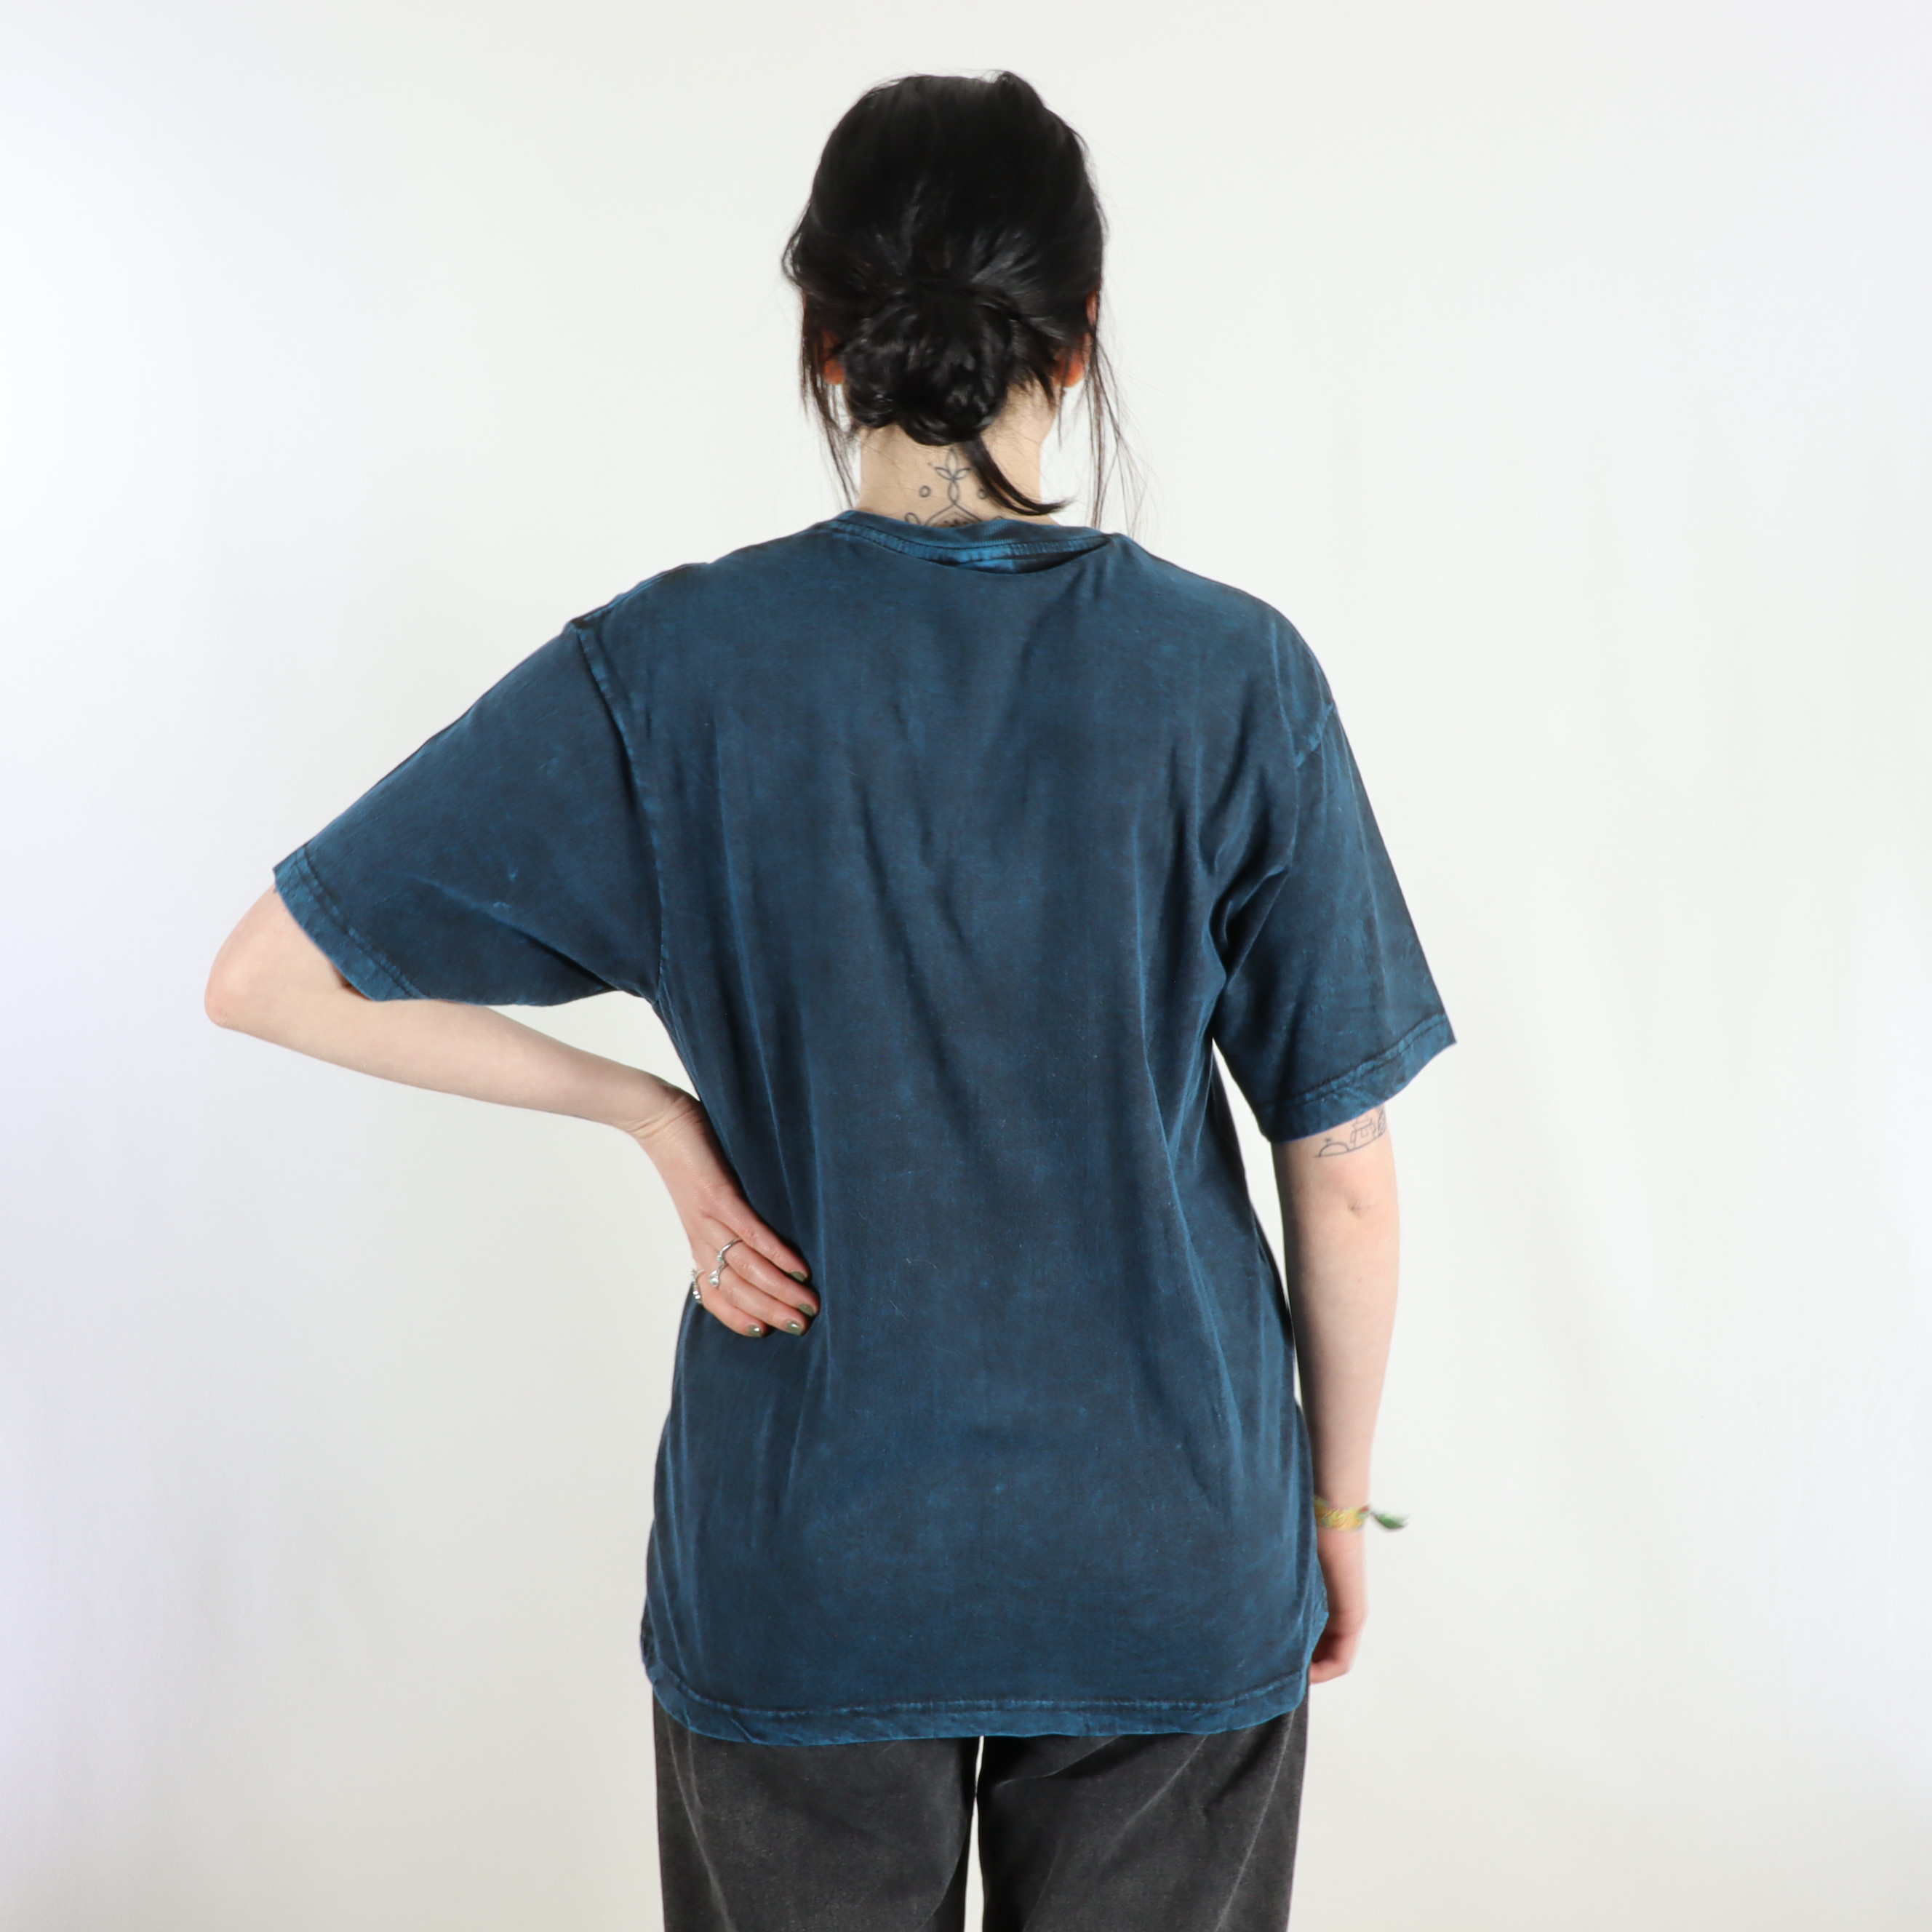 T-Shirt mit großem Mantra Aufdruck - 100% Baumwolle - im Stonewash Used Look Design - bequem und lässig - Fair gehandelt aus Nepal